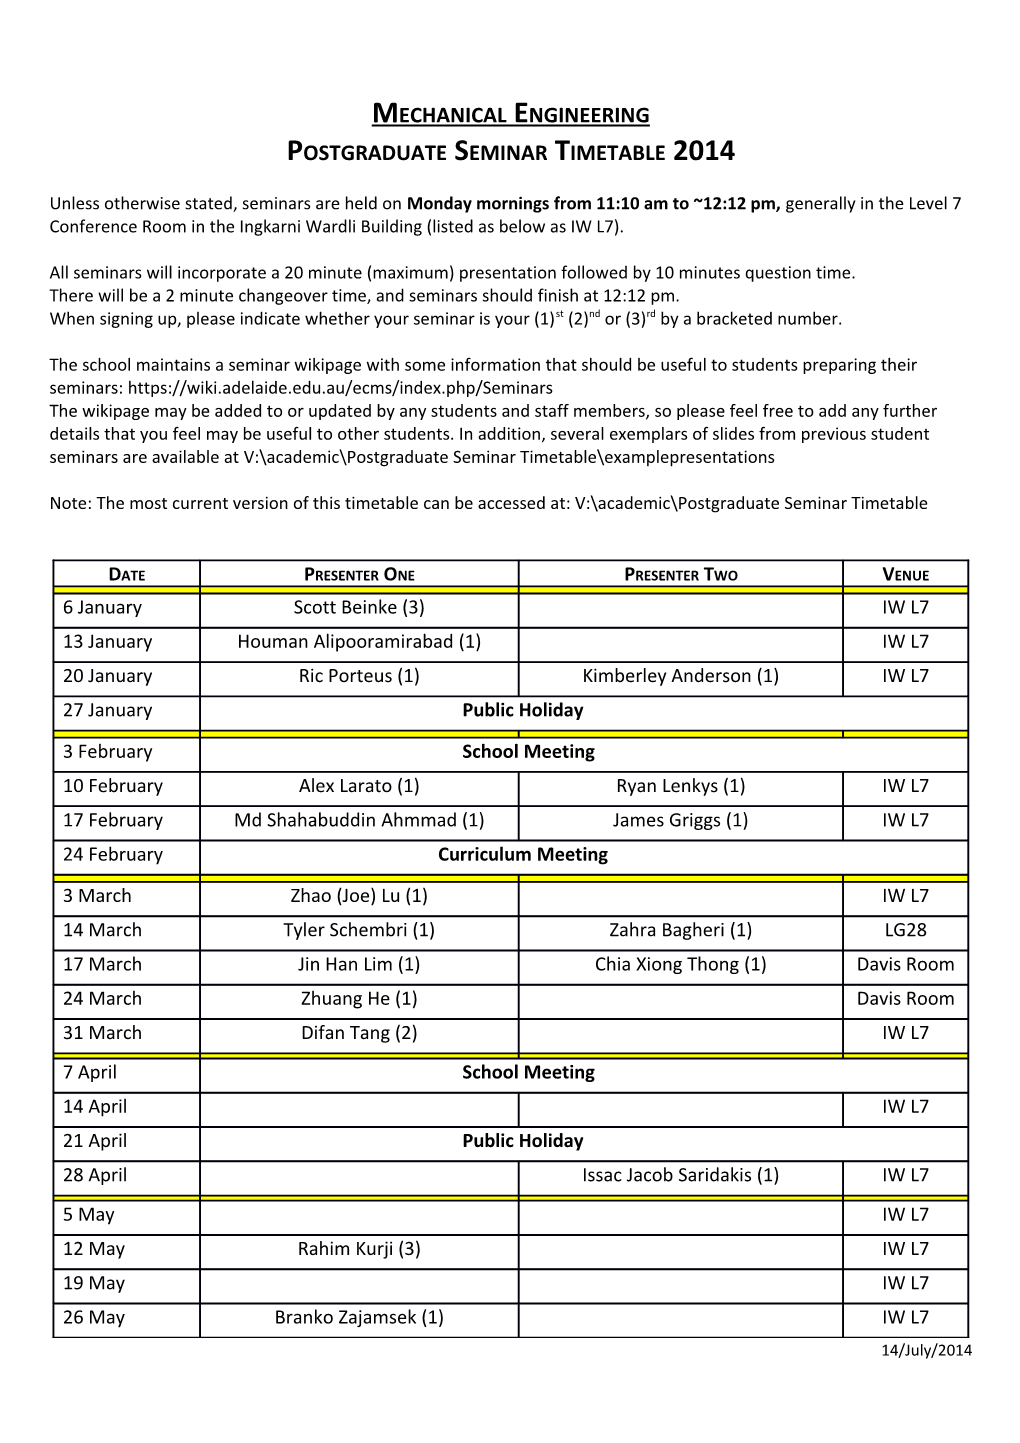 Postgraduate Seminar Timetable 2008